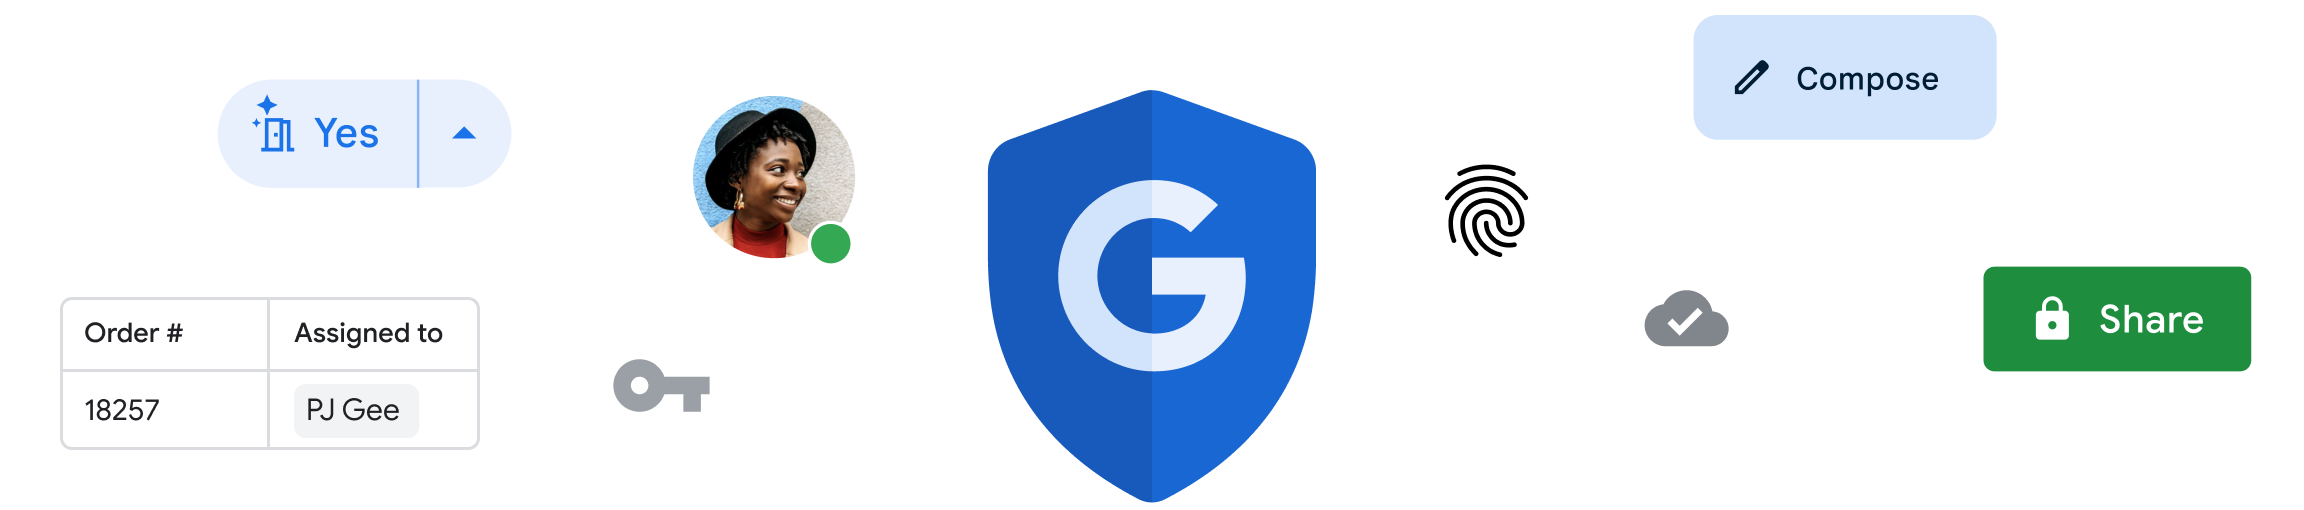 وسائل حماية الأمان التي تقدّمها حزمة Google Workspace على مختلف التطبيقات